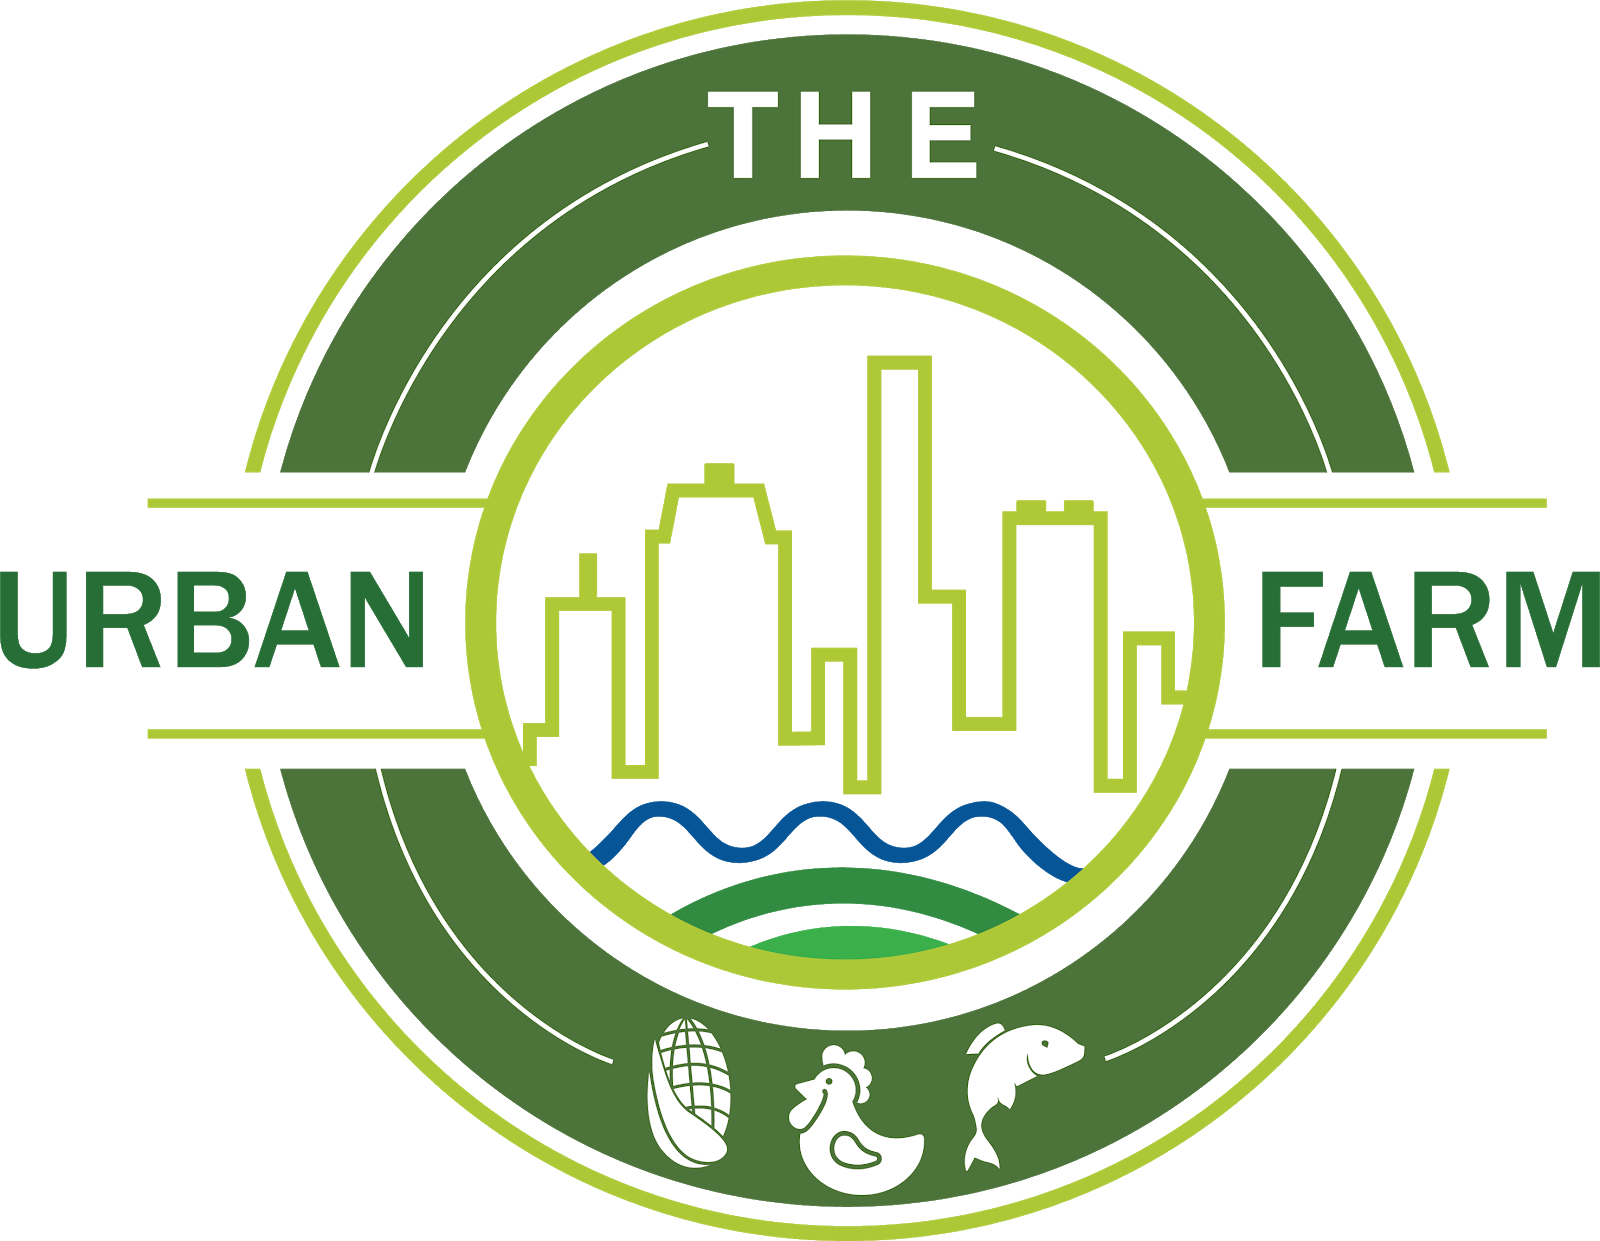 The Urban Farm